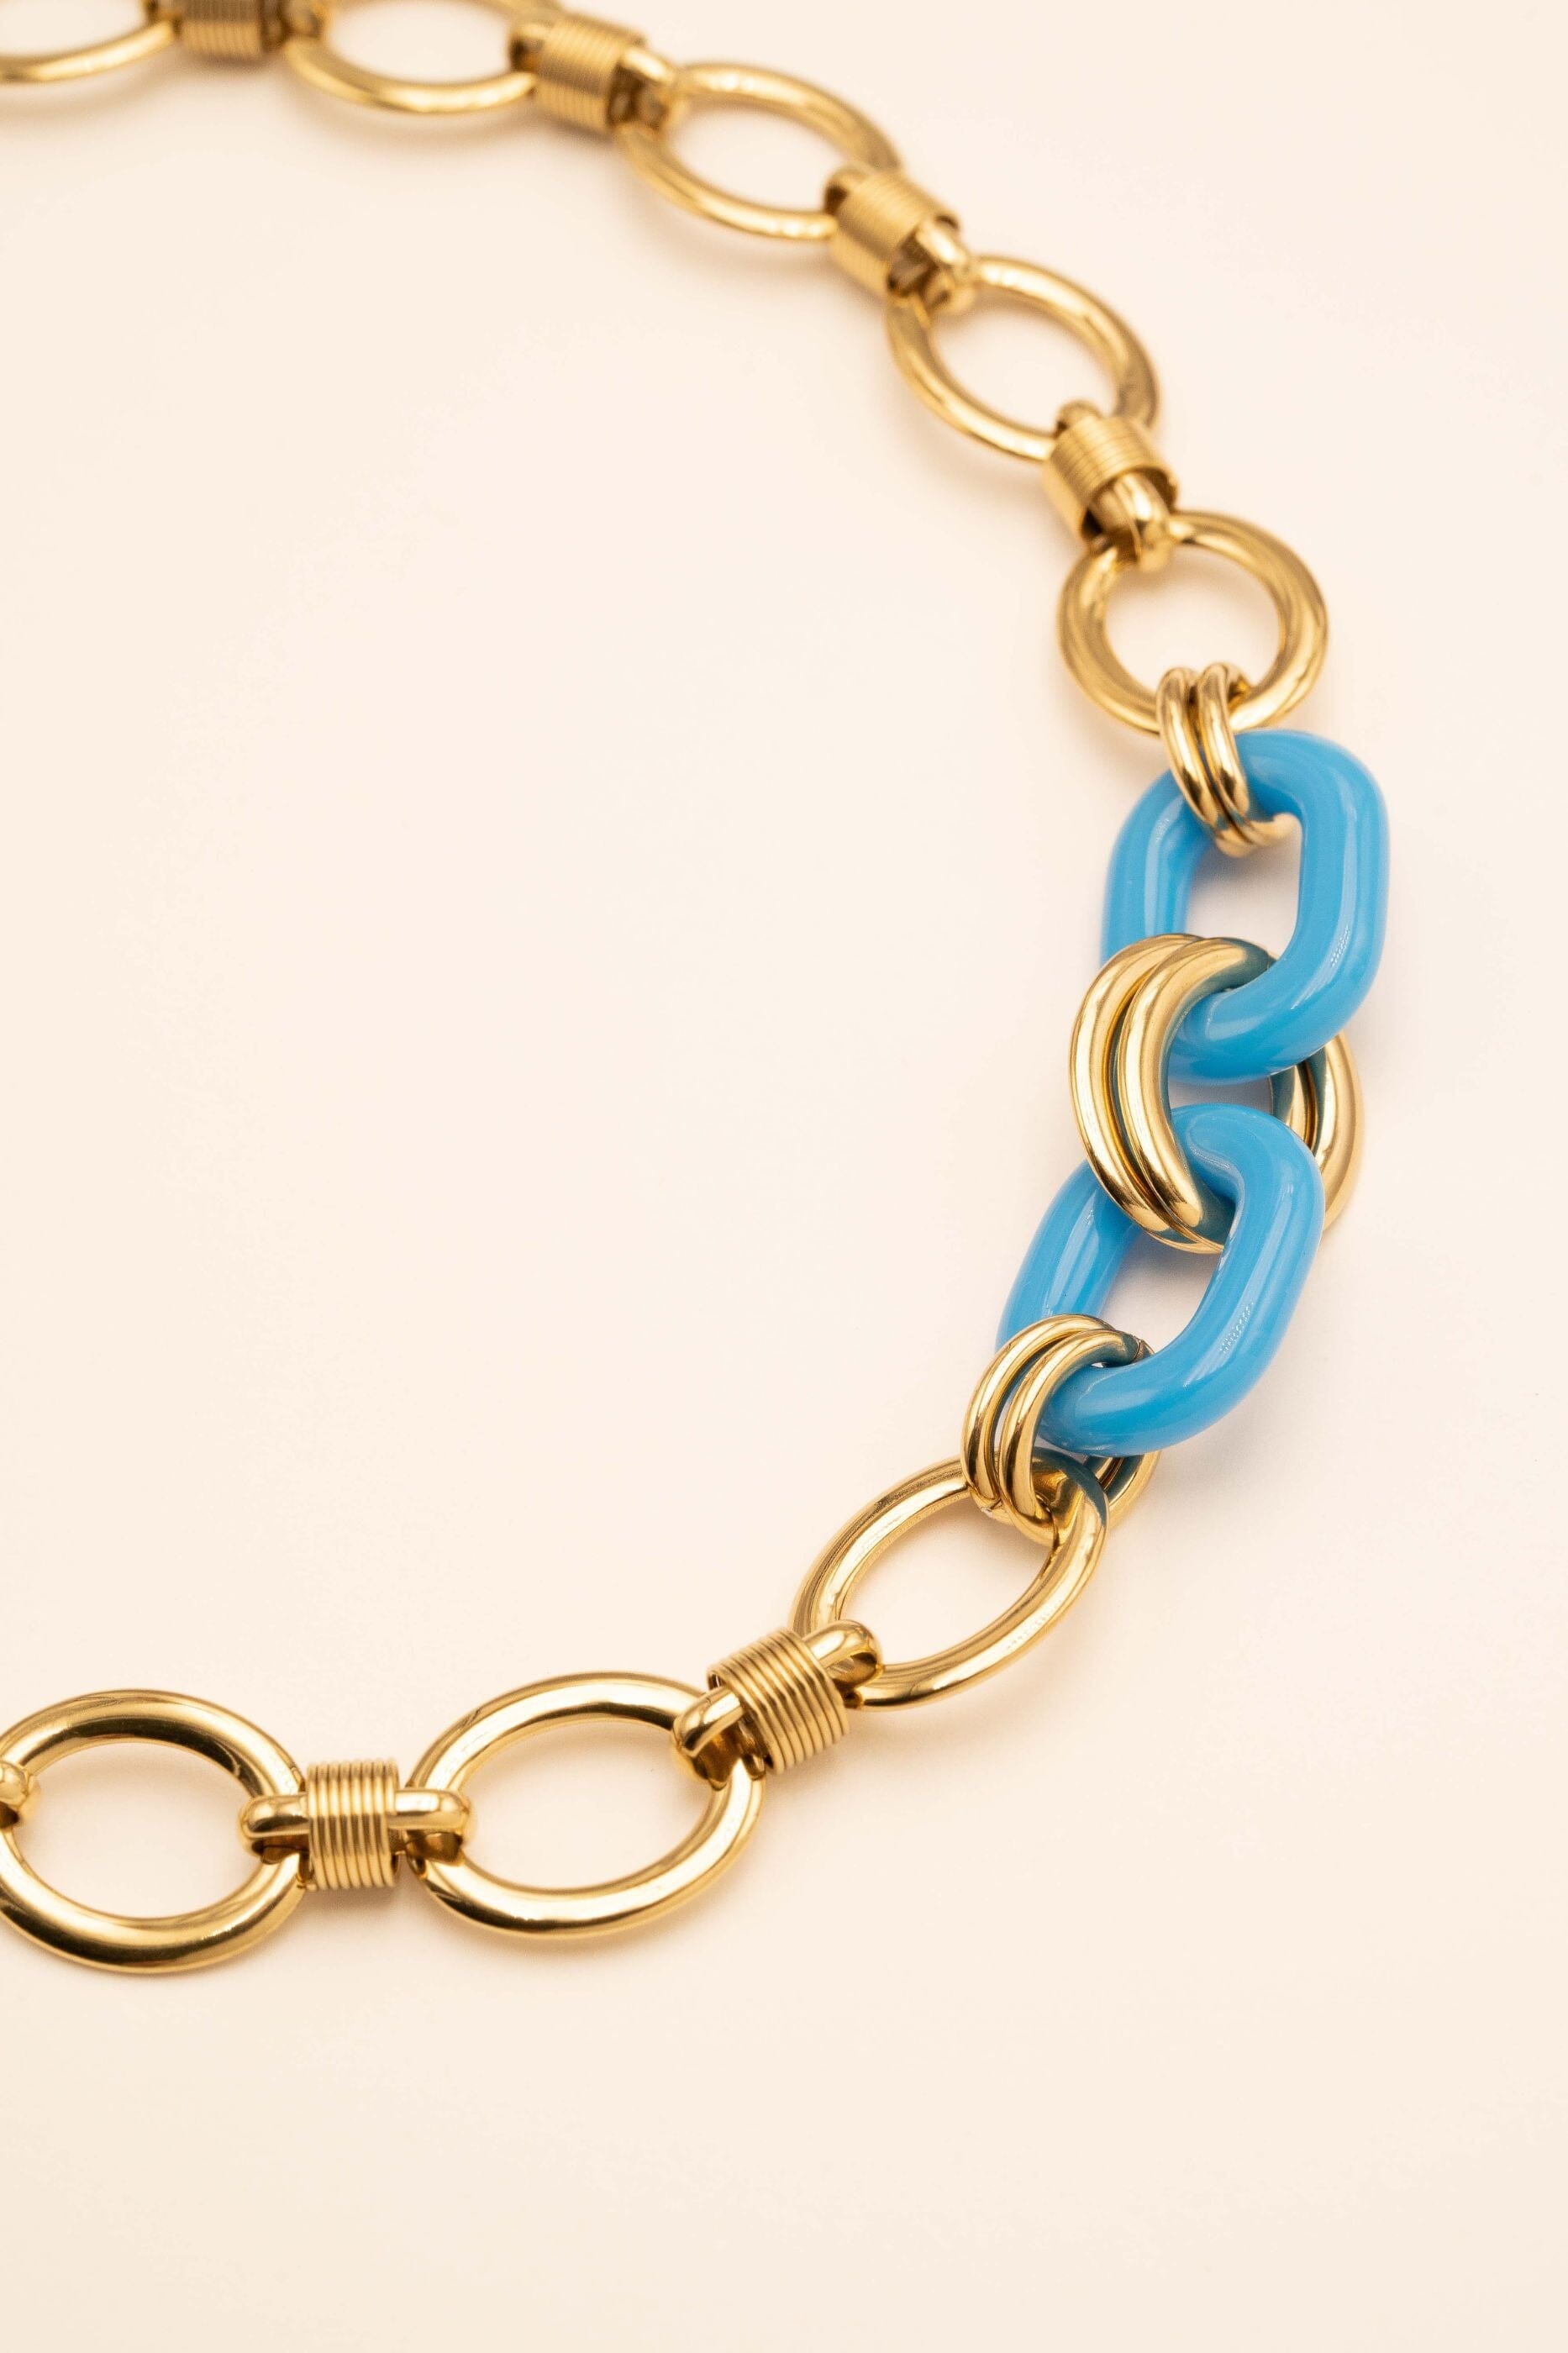 Collier Bohm Paris - Matheline bracelet Bohm Paris Turquoise Résine 